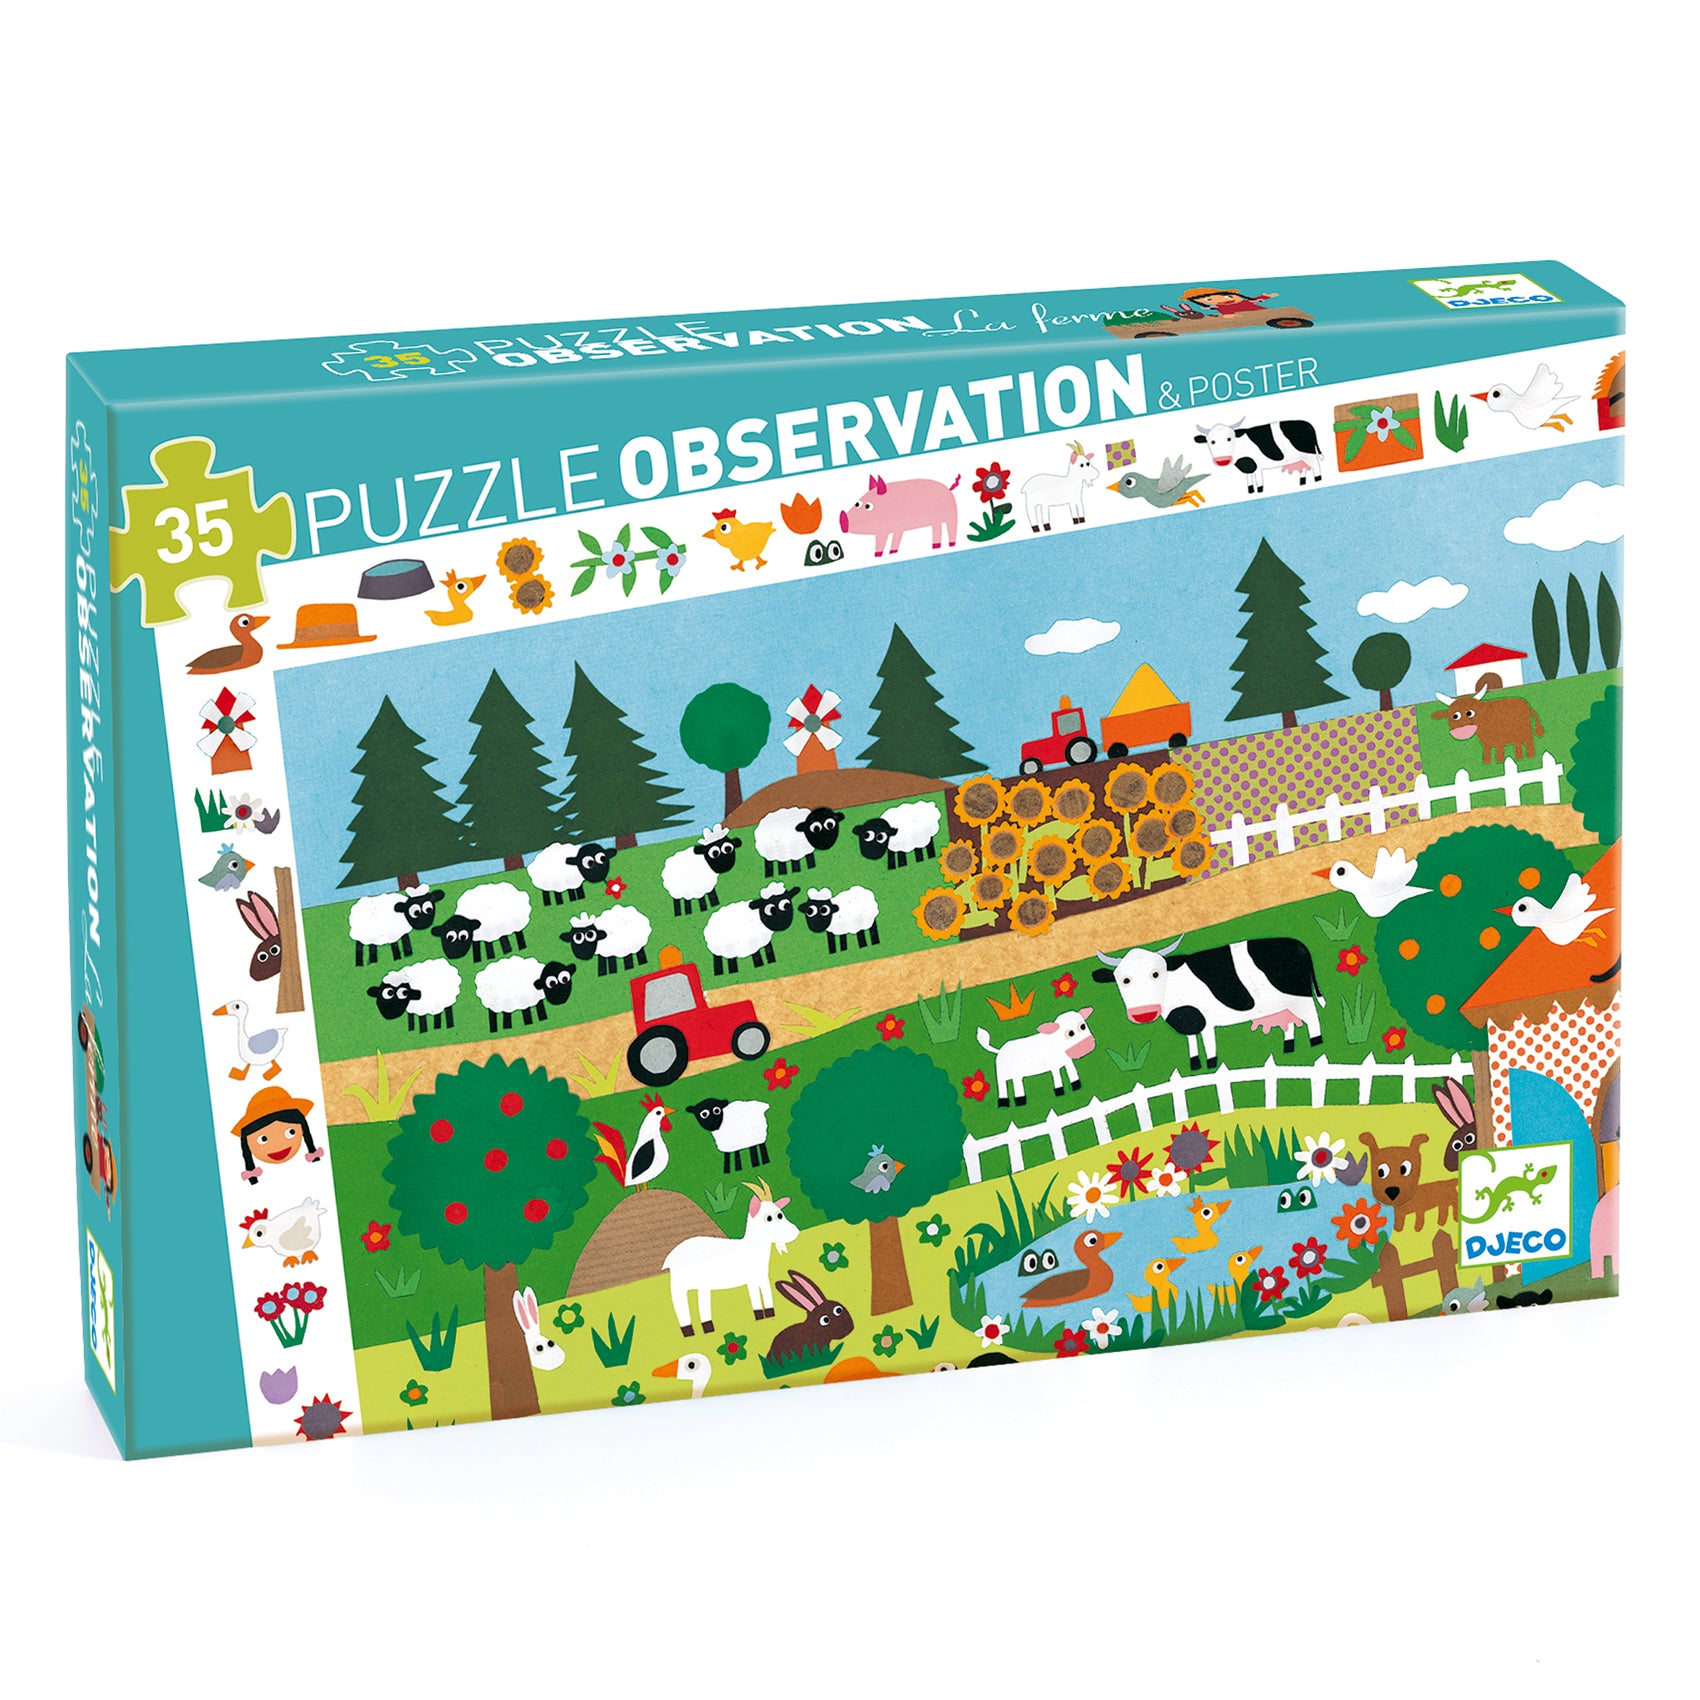 Puzzle Observation: Farm Puzzles 35pcs